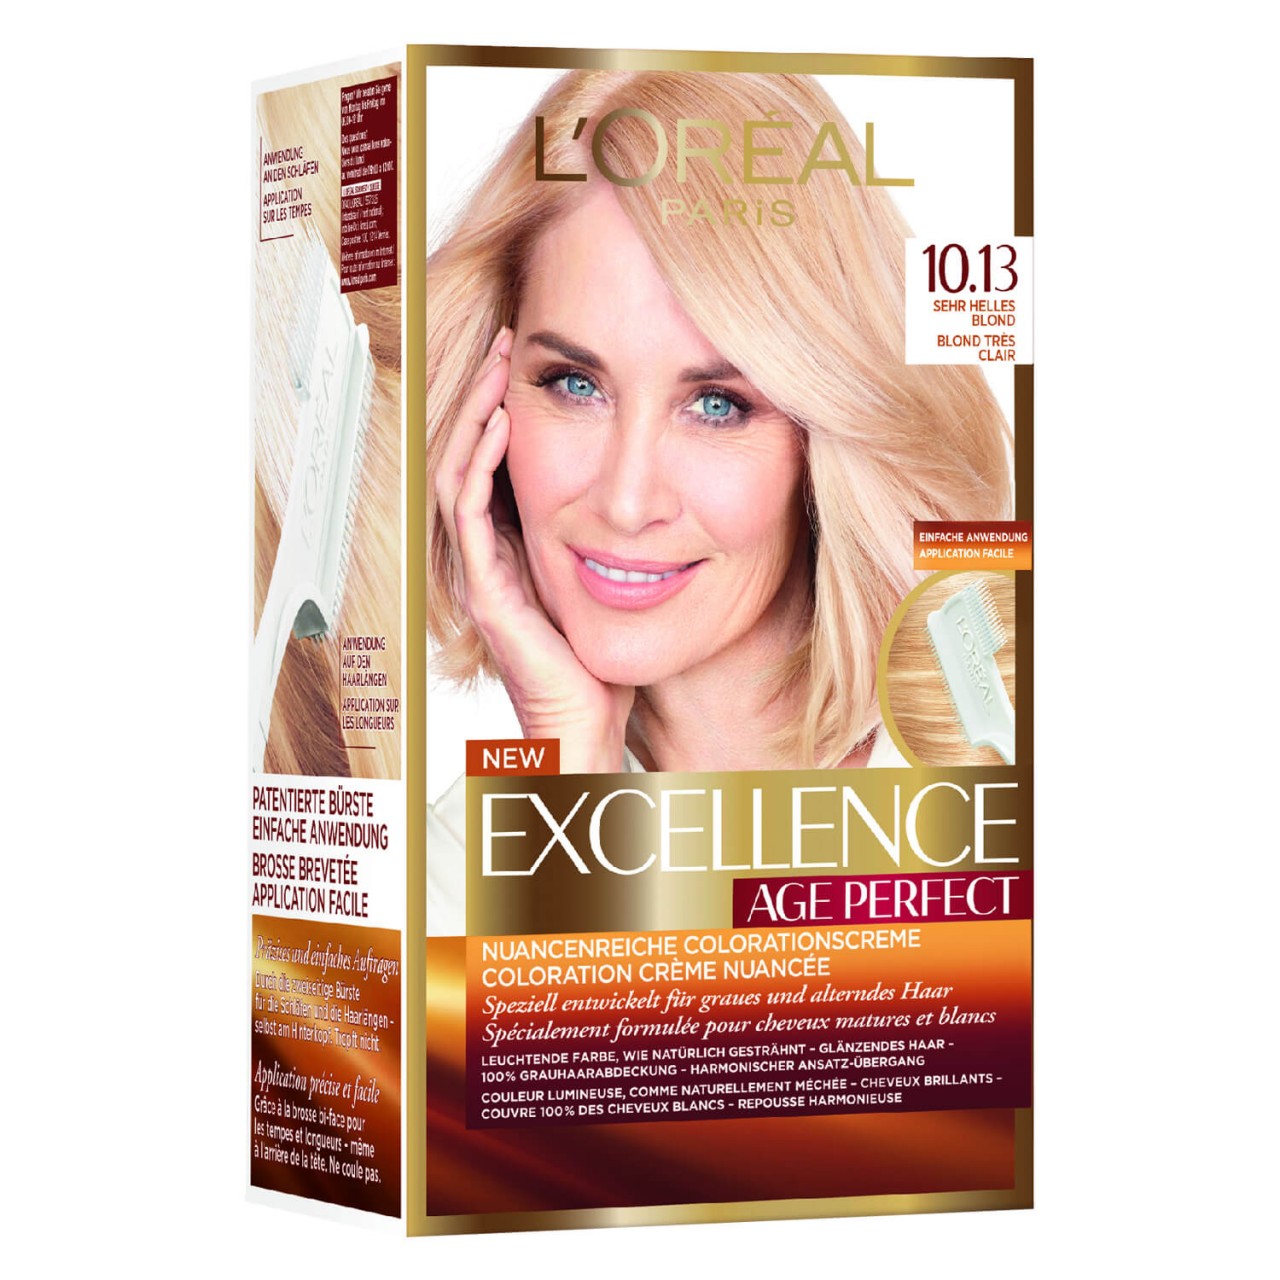 LOréal Age Perfect Color - 10.13 Sehr Helles Blond von L'Oréal Paris